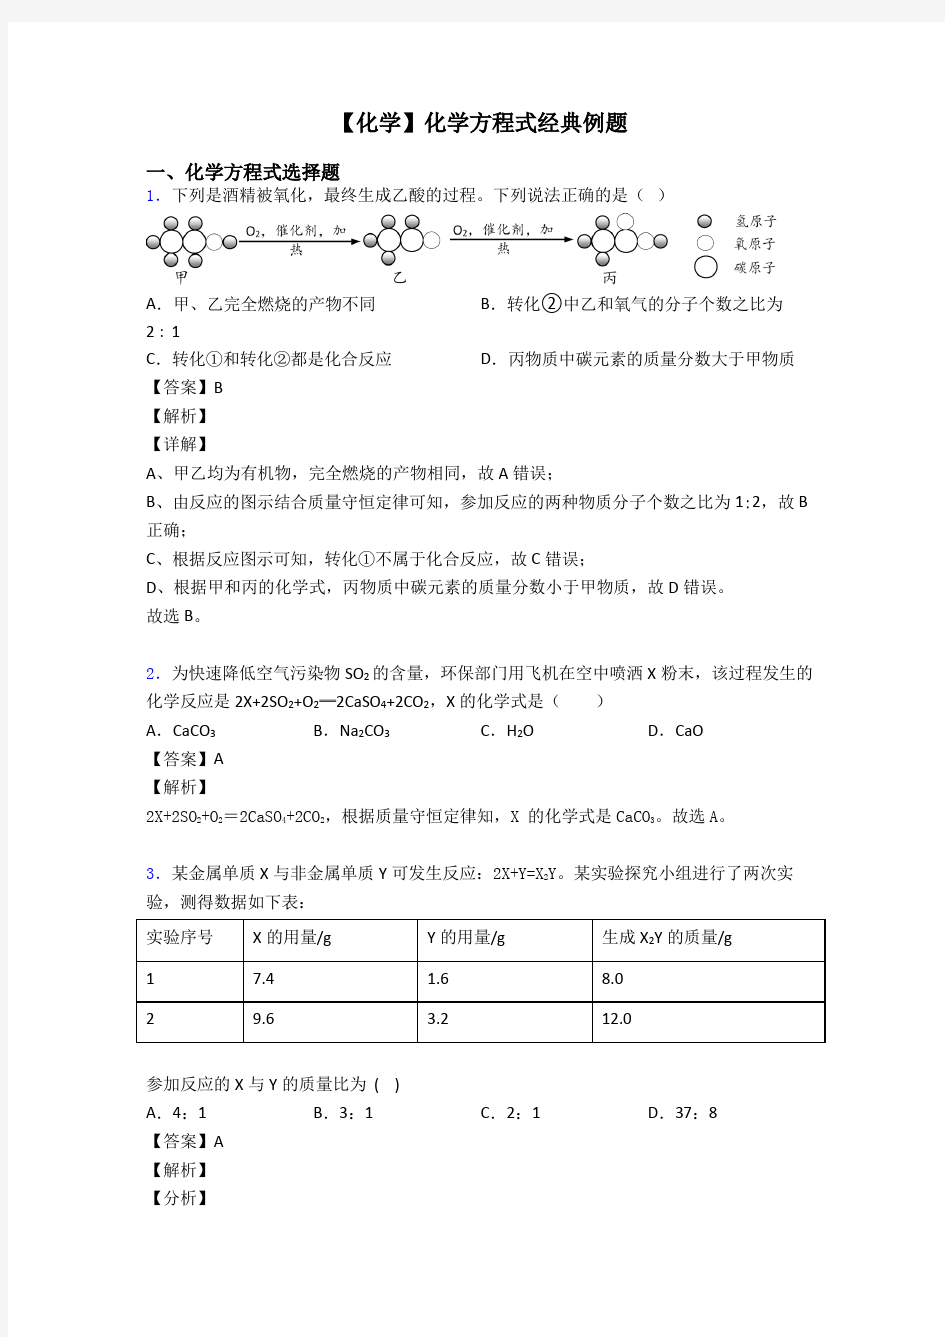 【化学】化学方程式经典例题